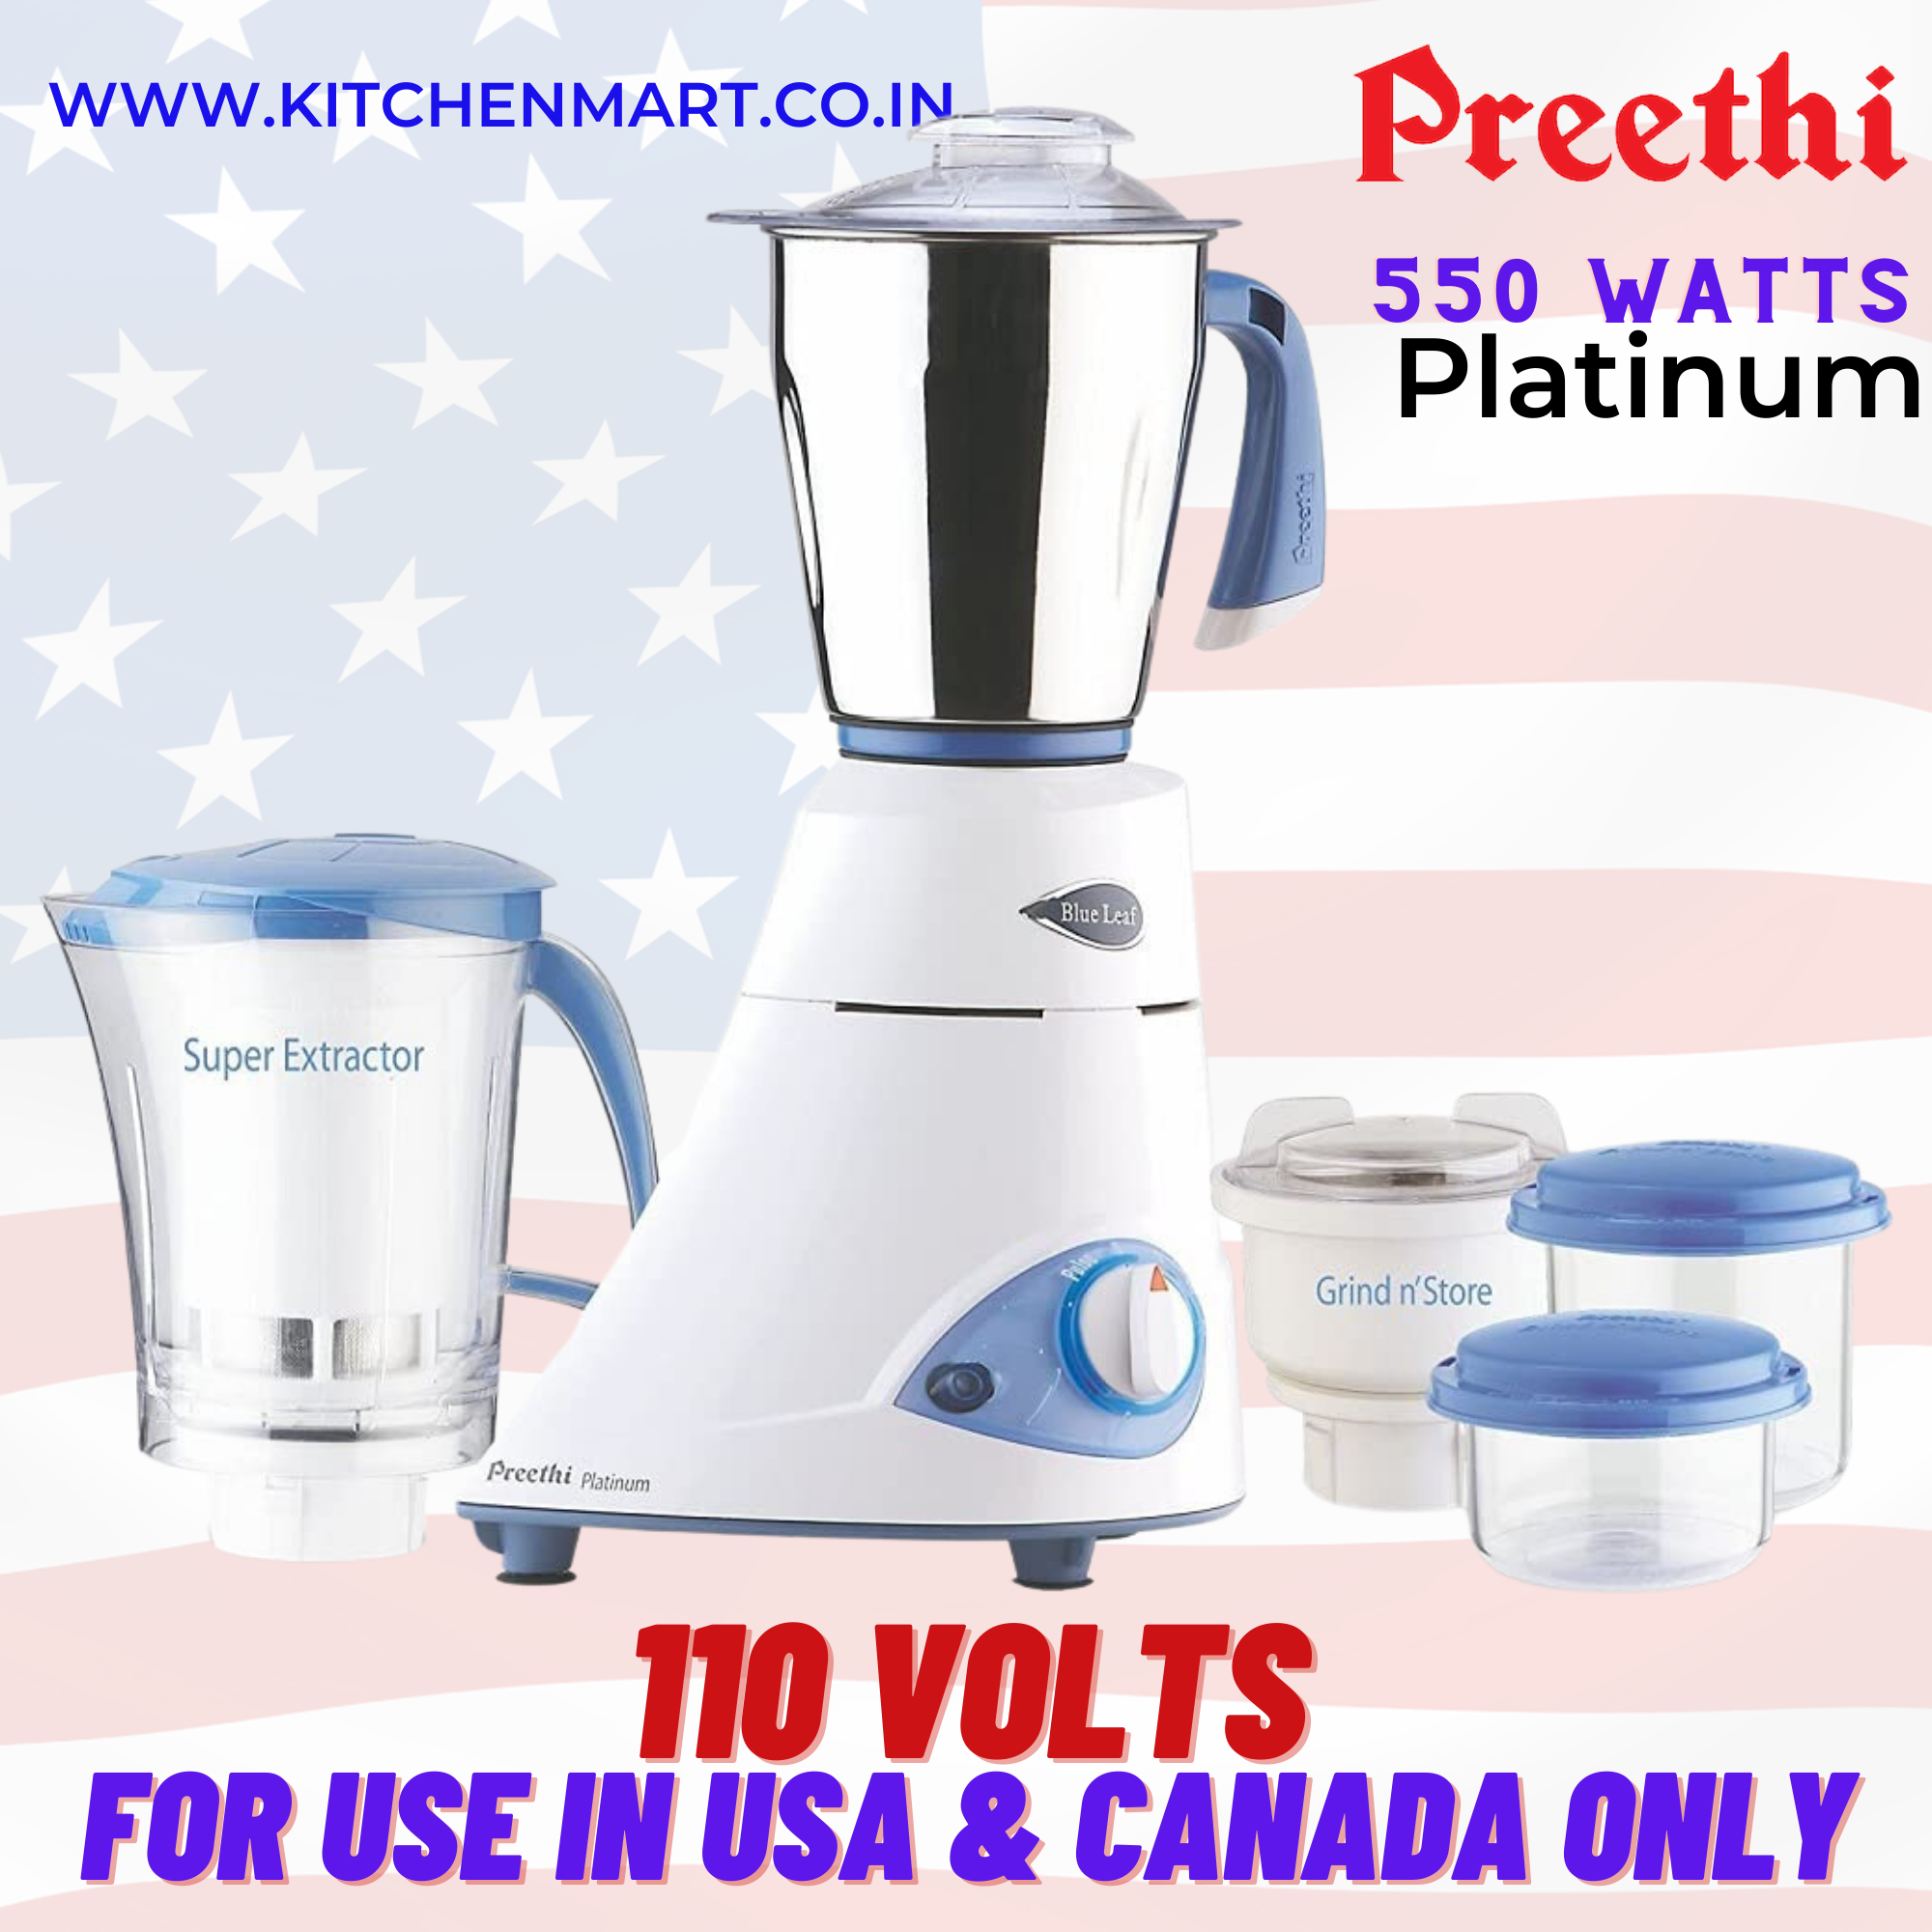 Preethi Eco Plus 4 Jar Mixer Grinder 110 Volts